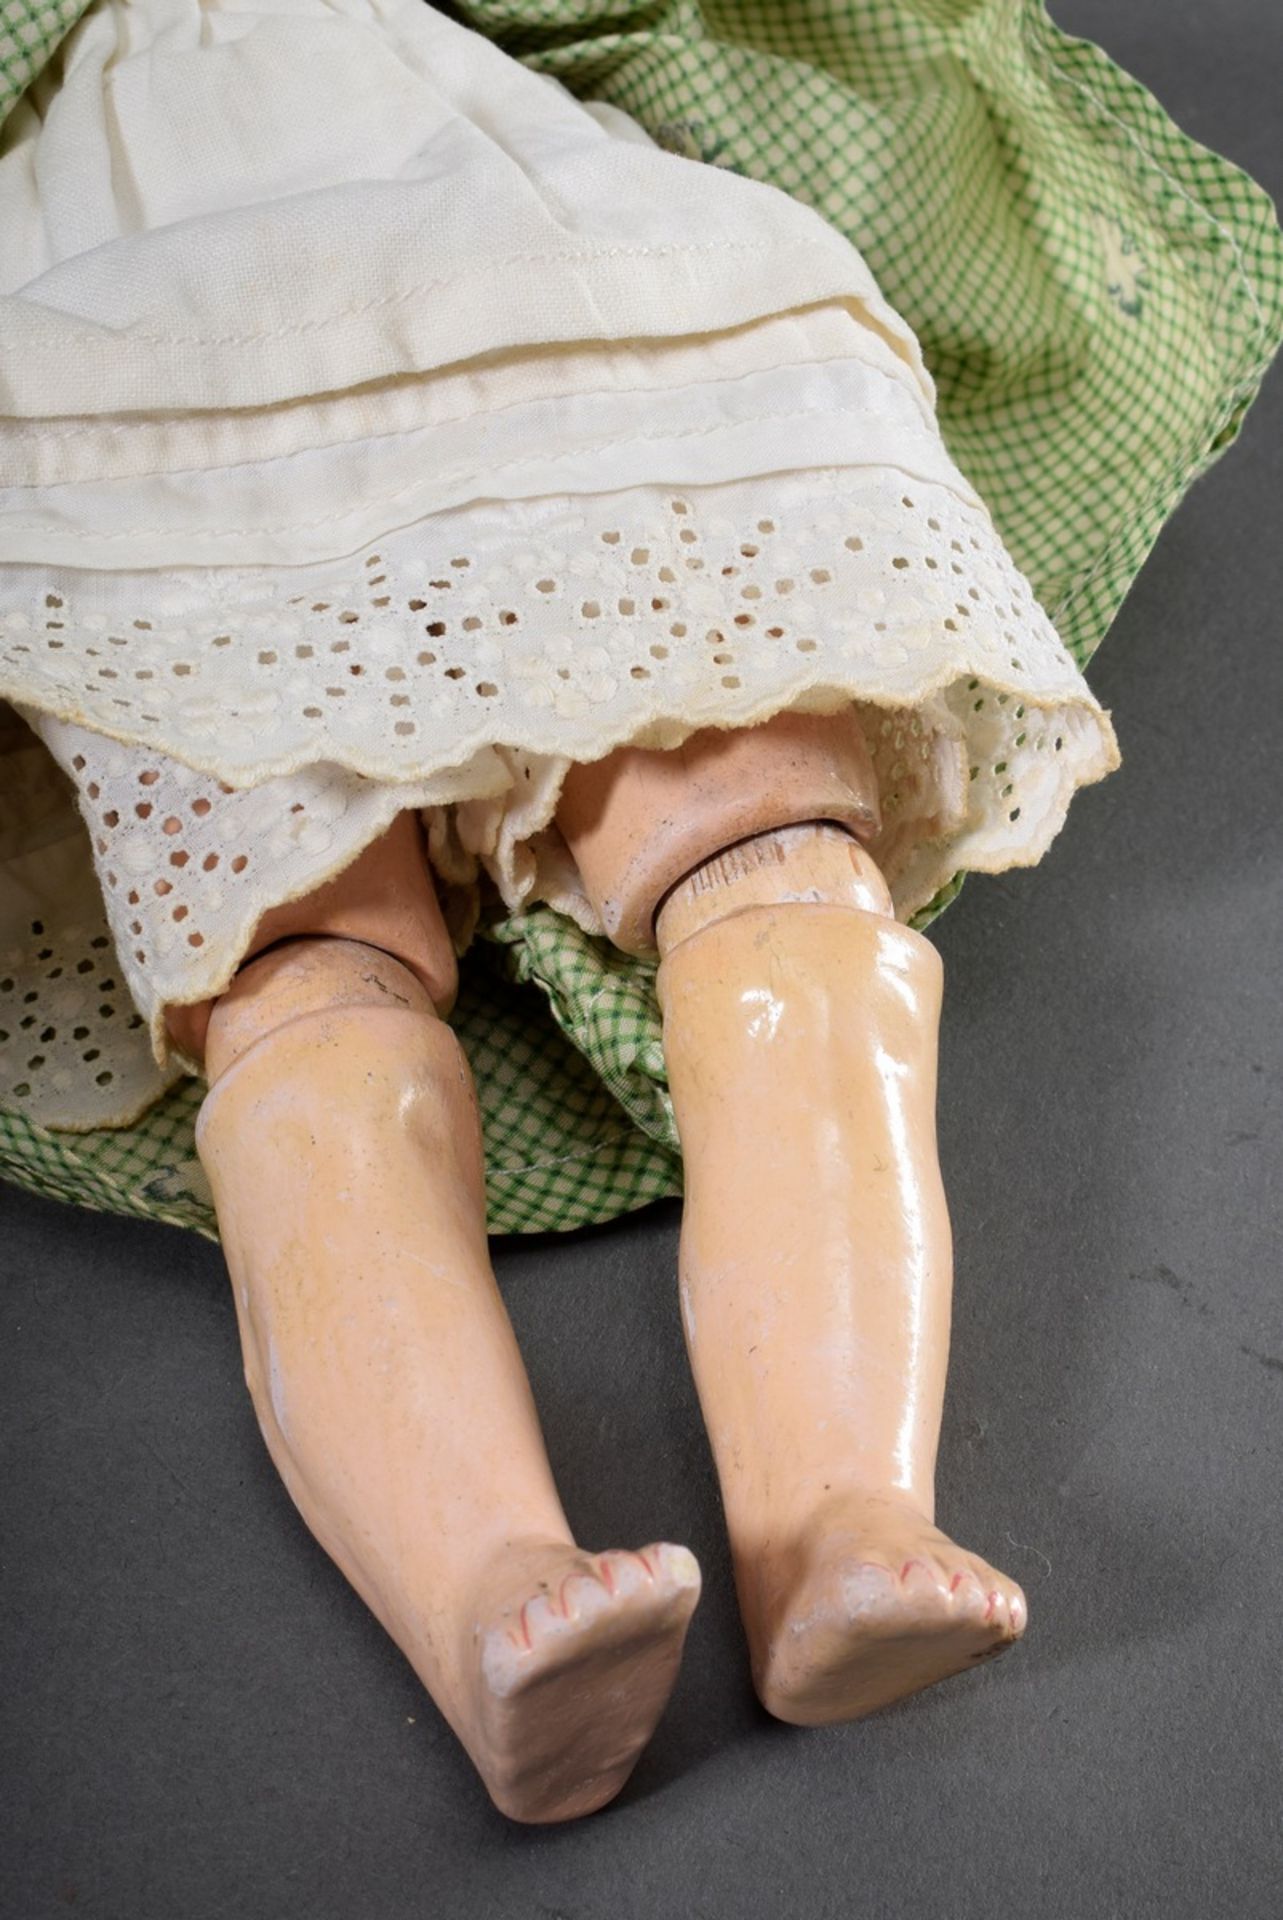 Kleine Kley & Hahn Puppe mit Porzellan Kurbelkopf und Schlafaugen, offener Mund - Bild 4 aus 6